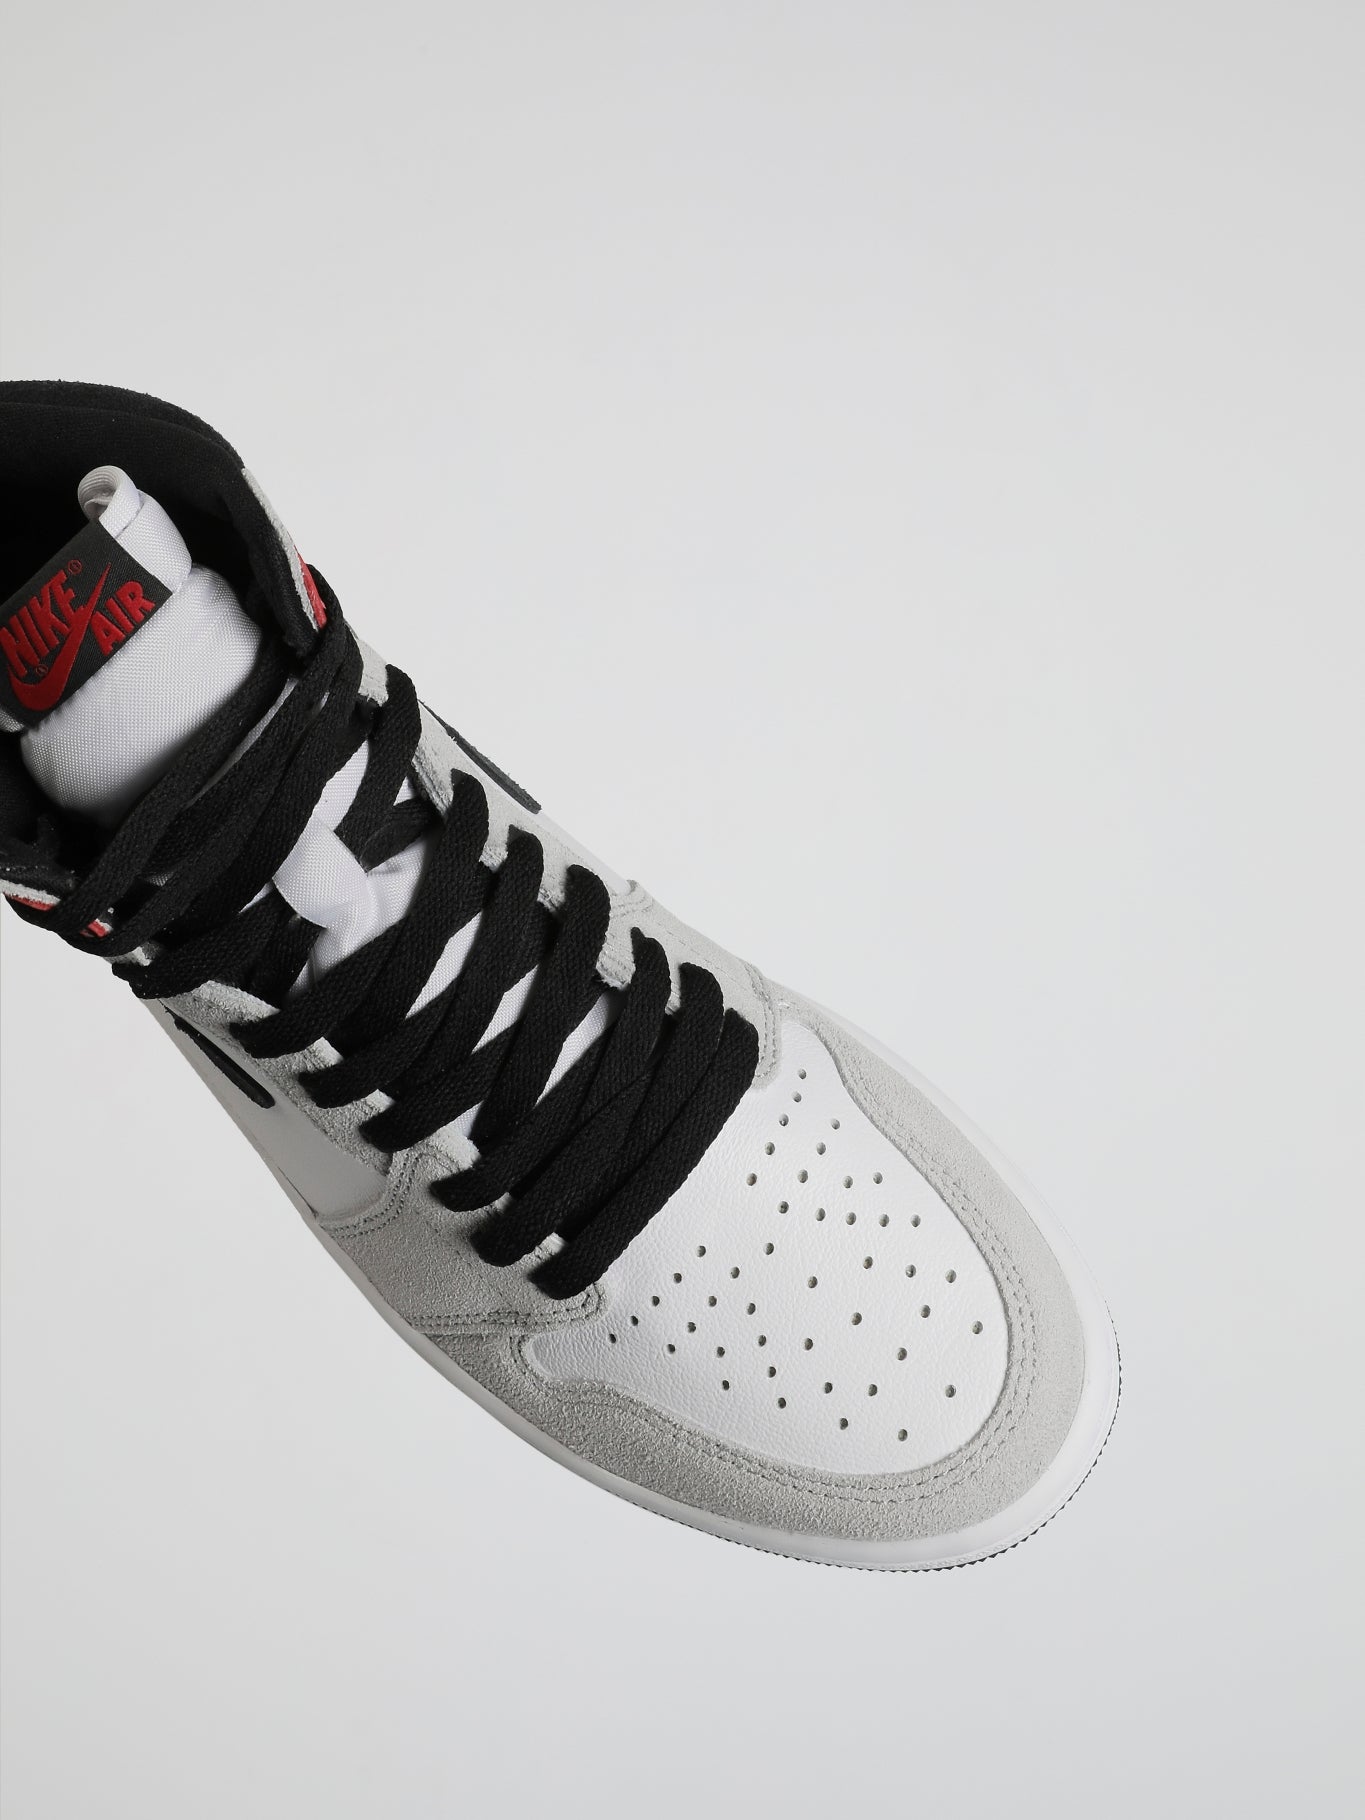 Air Jordan 1 Retro High OG Smoke Grey Sneakers